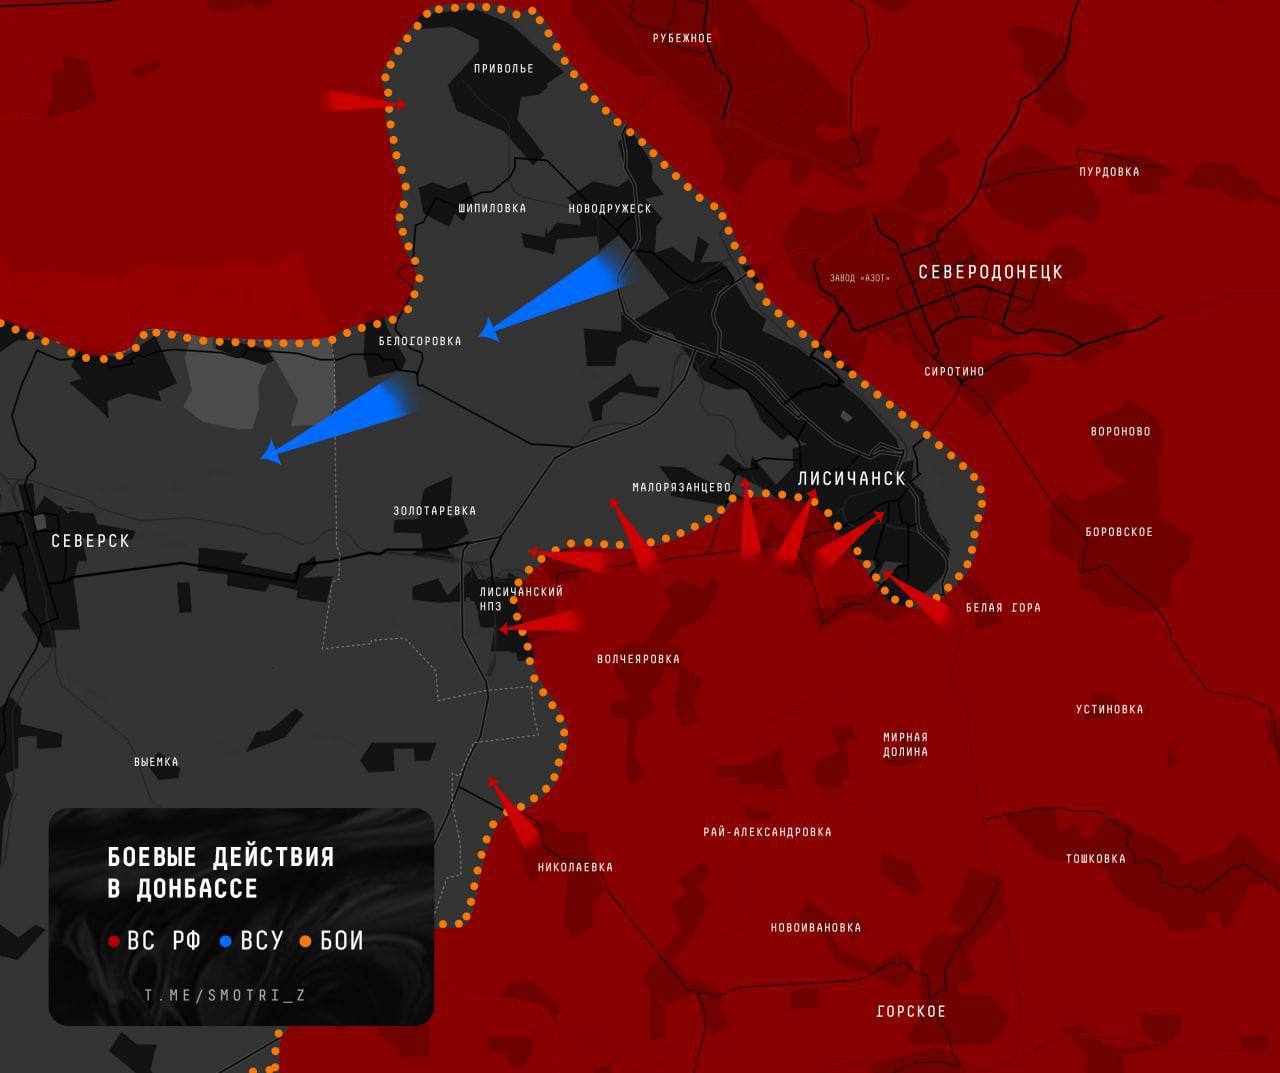 Ուկրաինական բանակը մեծ կորուստներով փախչում է Լիսիչանսկից (Քարտեզ)